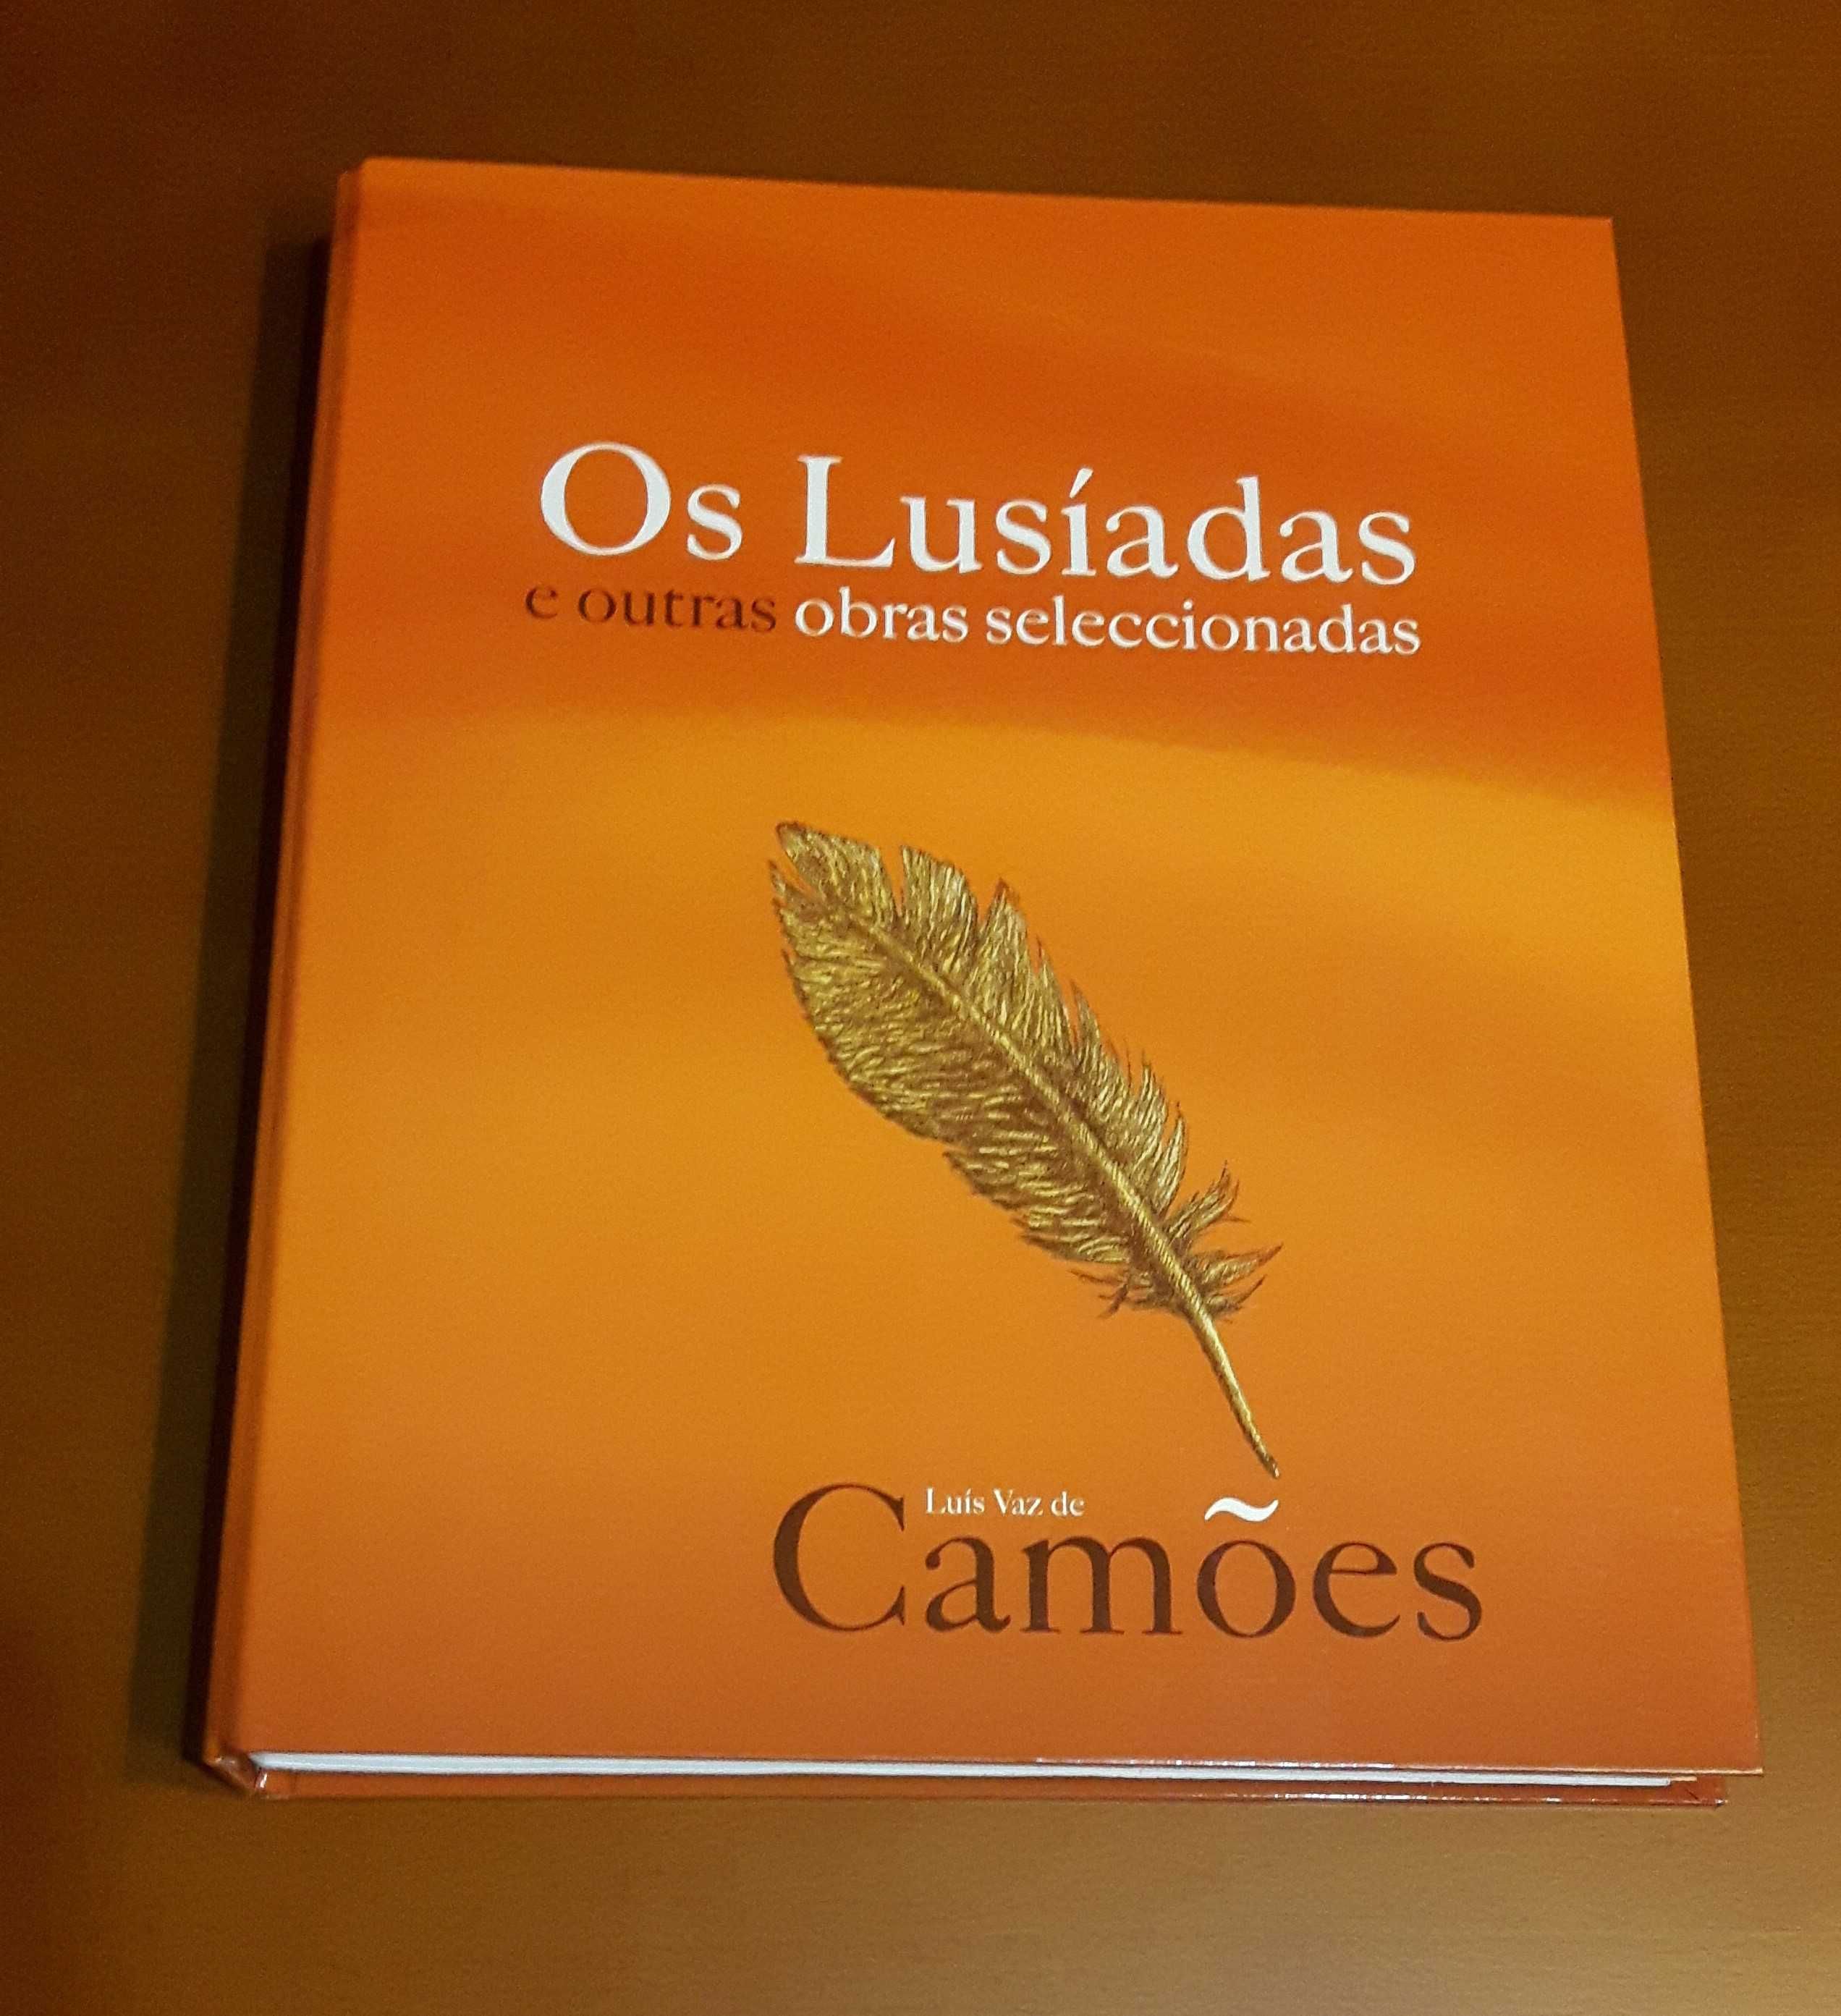 Livro de Colecção "Os Lusíadas" de Luís Vaz de Camões